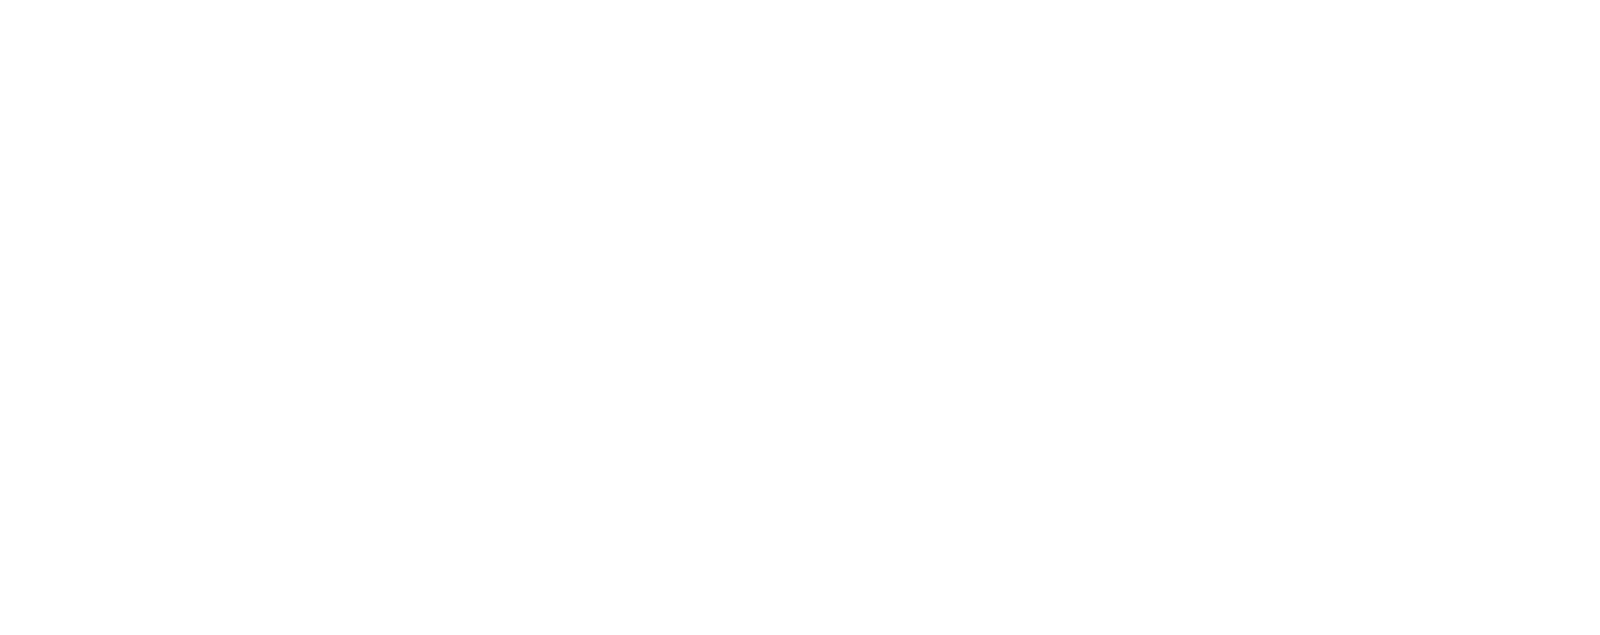 Dessins au trait indiquant les dimensions du siège Aeron. La taille B, « medium », fait 36,75 – 43,25